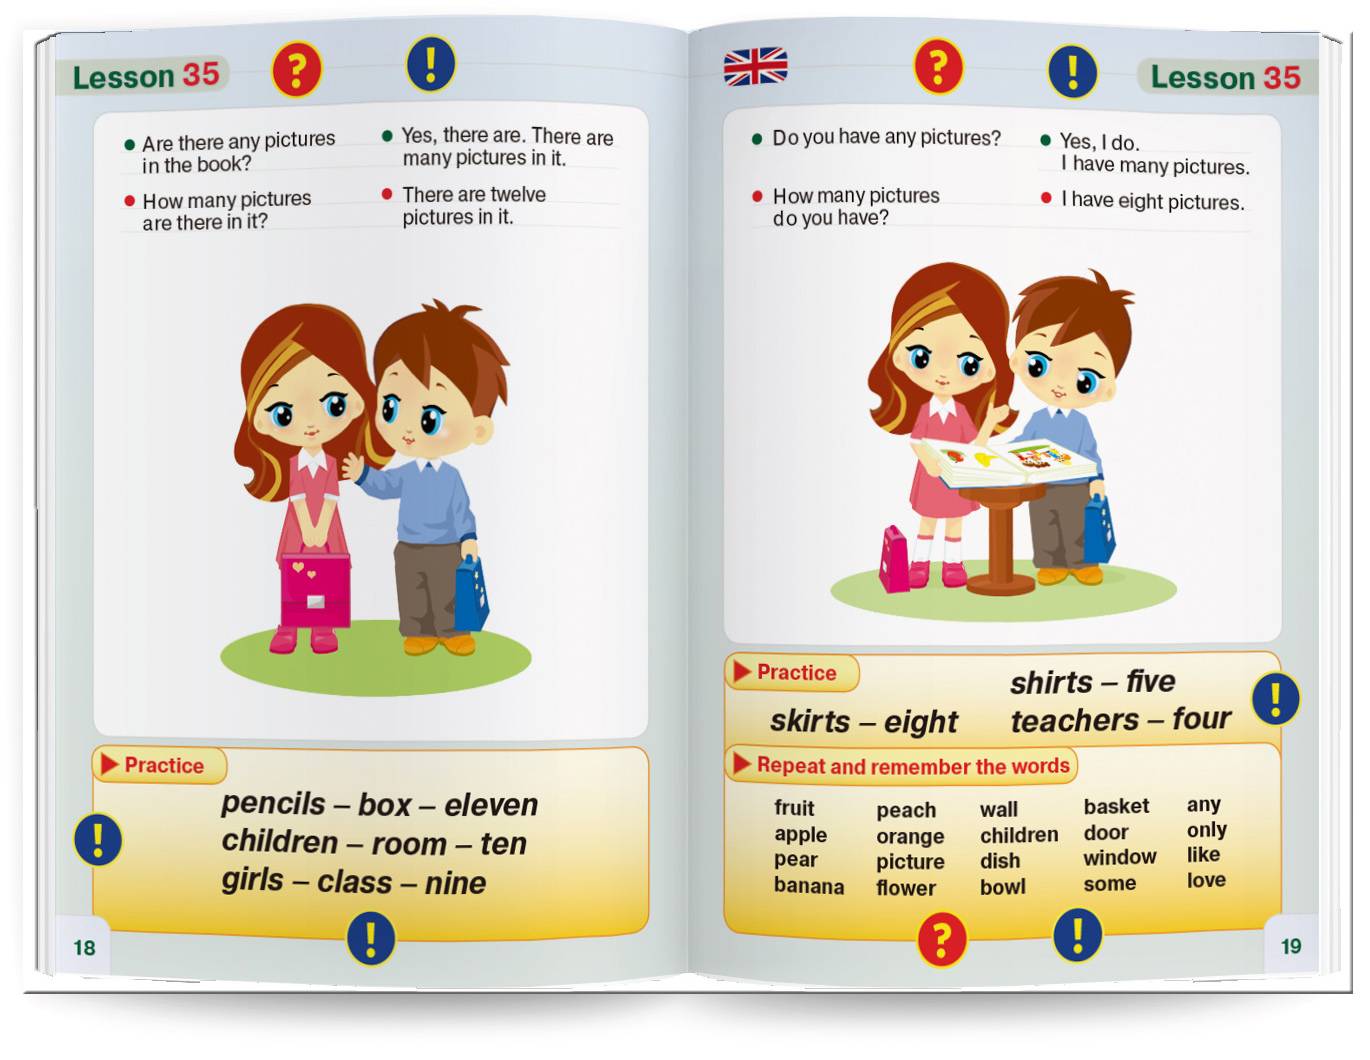 Как научить ребенка читать по-английски быстро и правильно: 5 советов